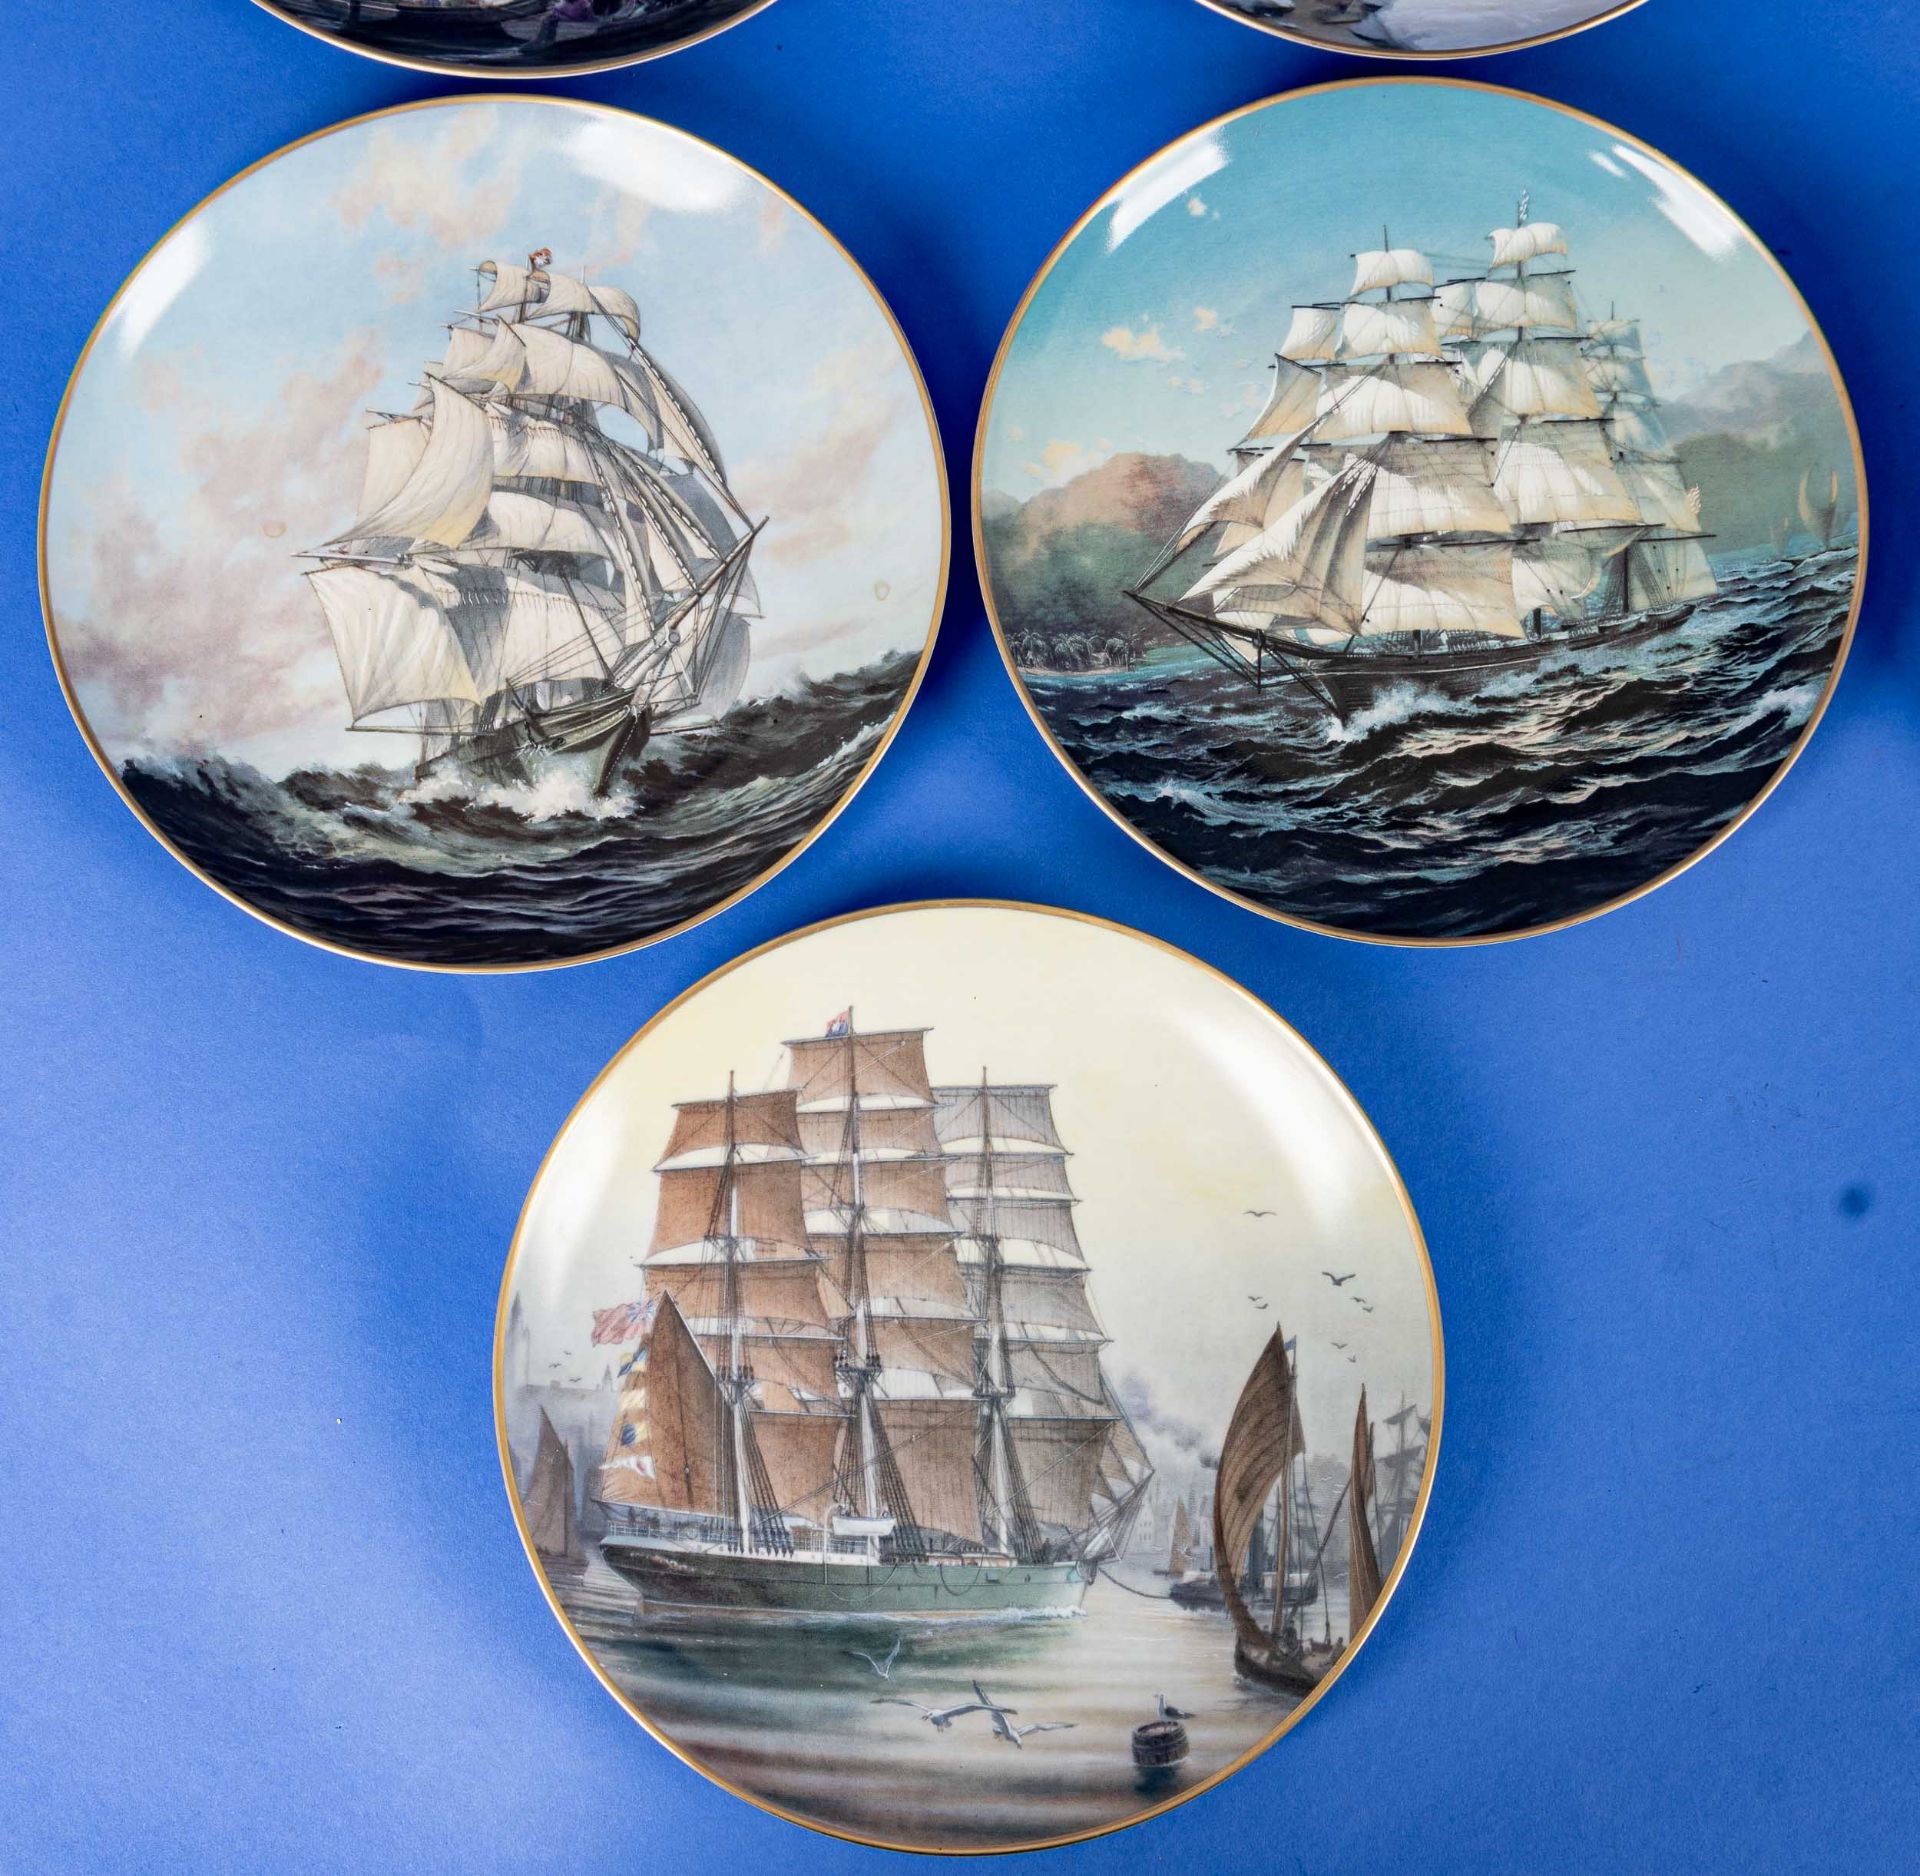 13teilige Sammlung maritimer Porzellan-Objekte, bestehend aus 2teiliger "GORCH FOCK" Kaffeetasse de - Bild 8 aus 14